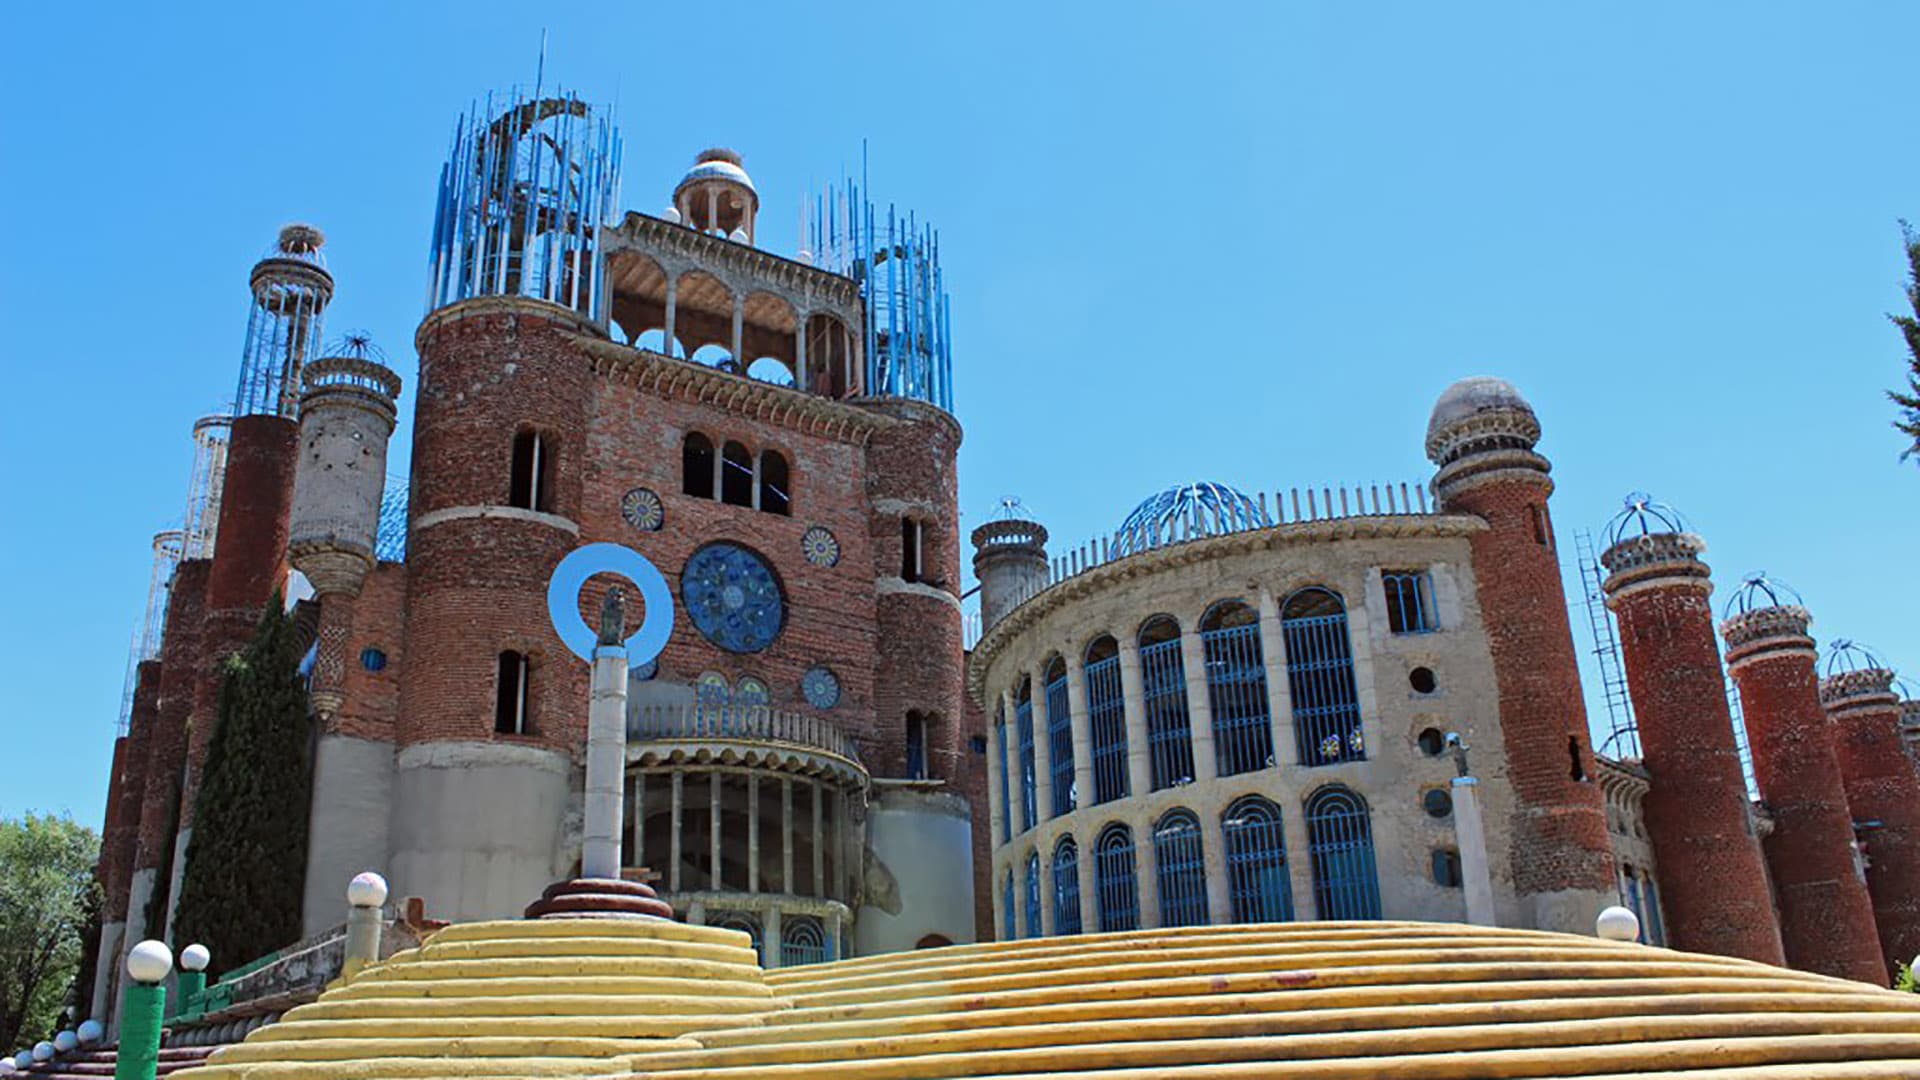 Alles mit den eigenen Händen erbaut: Die Kathedrale von Mejorada del Campo östlich von Madrid wurde von einem Mann in 60 Jahren errichtet